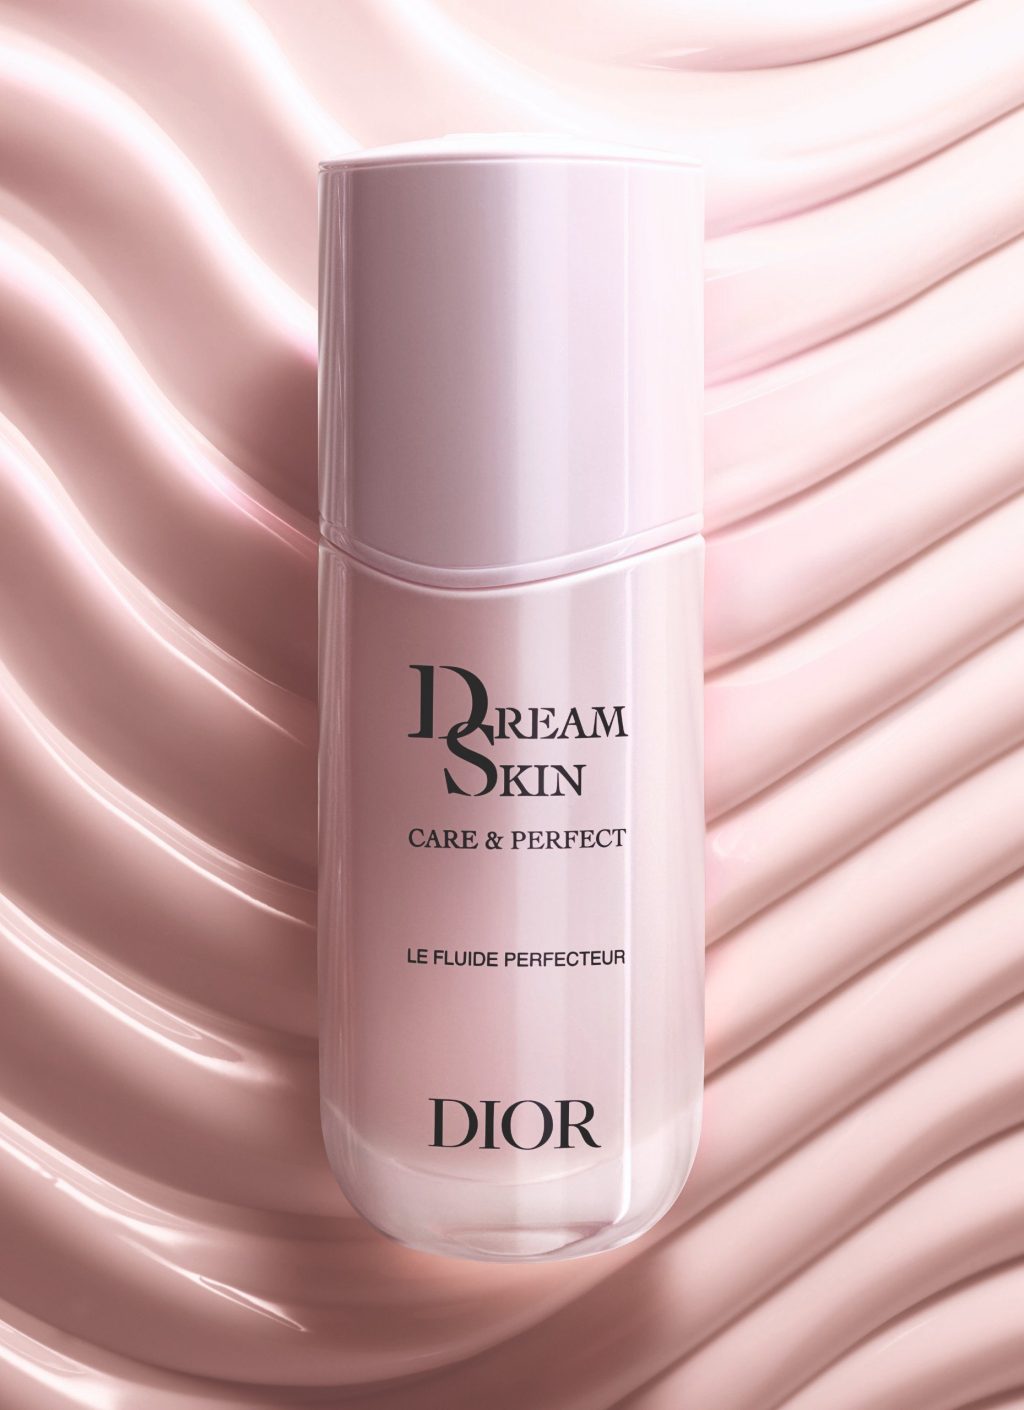 Điểm tin làm đẹp - Dior ra mắt kem dưỡng ẩm Dreamskin